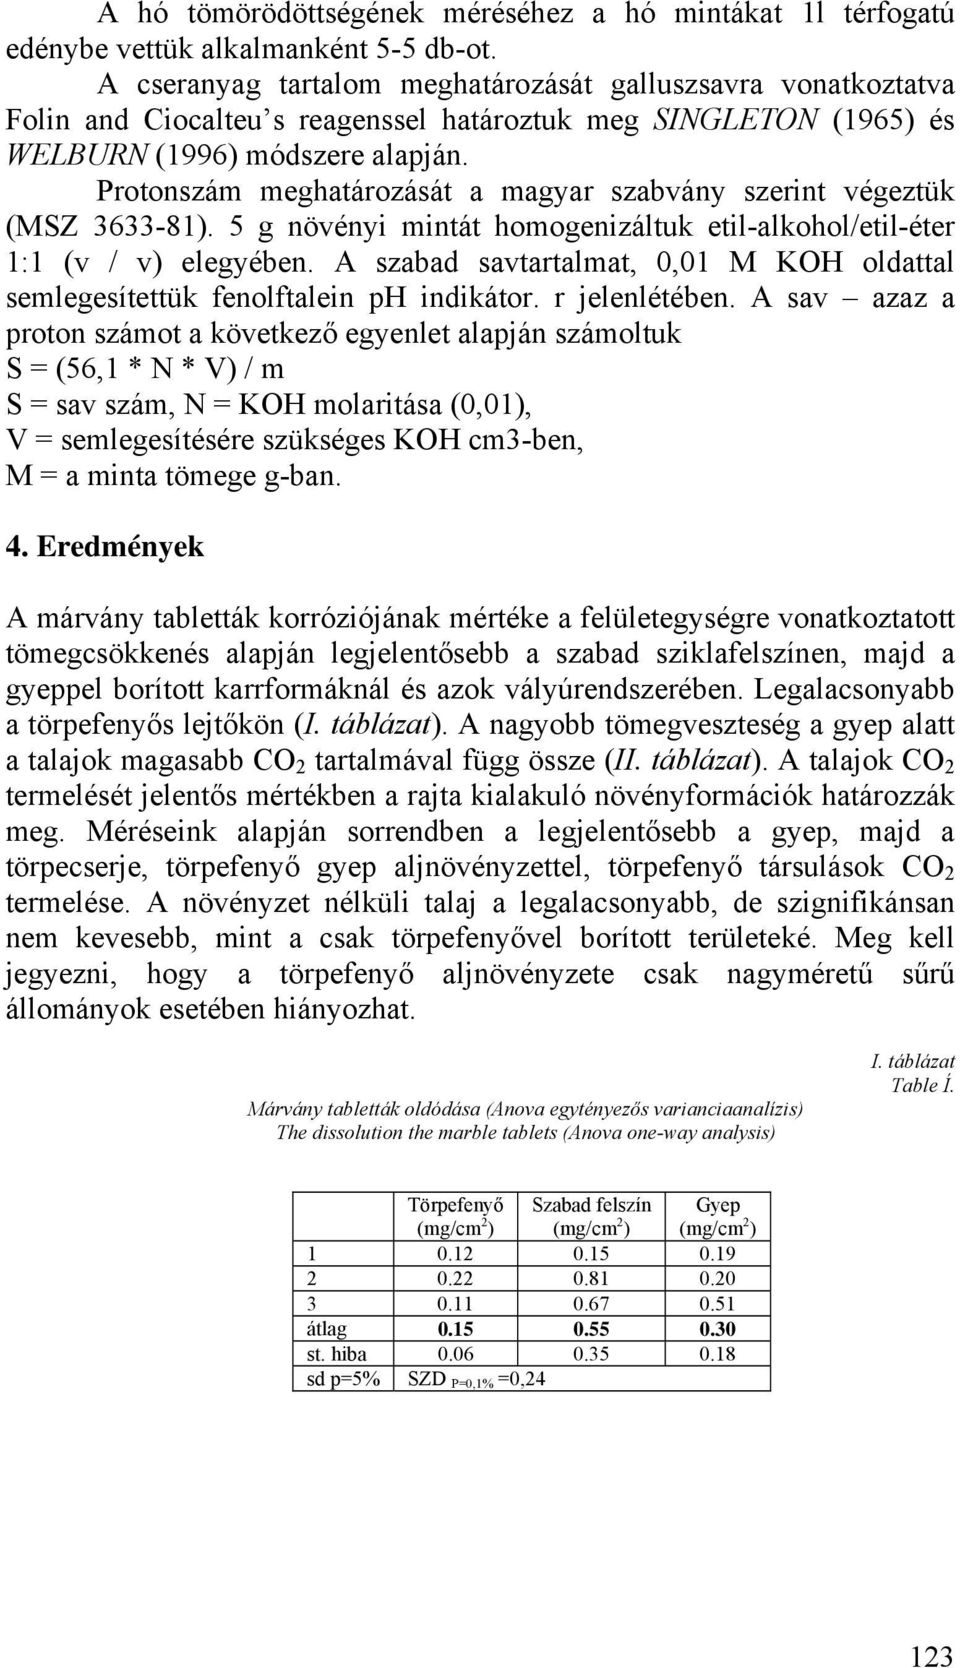 Protonszám meghatározását a magyar szabvány szerint végeztük (MSZ 3633-81). 5 g növényi mintát homogenizáltuk etil-alkohol/etil-éter 1:1 (v / v) elegyében.